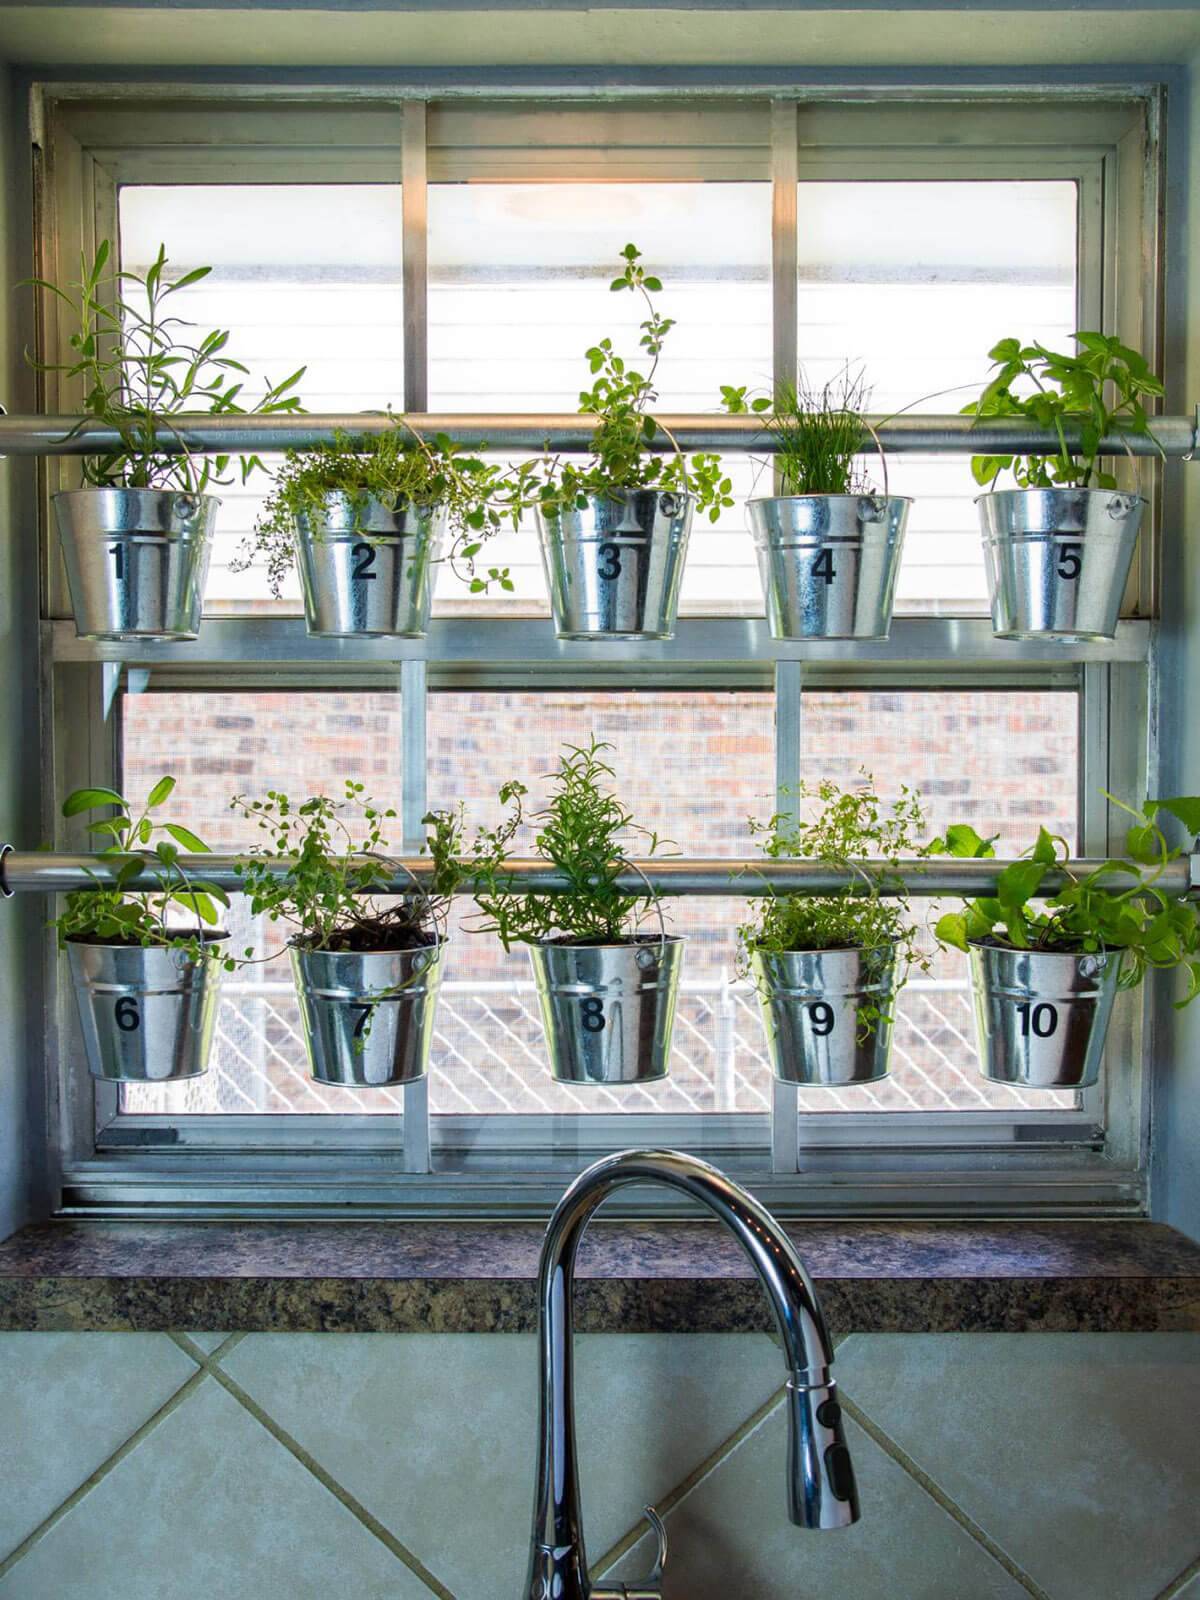 hanging herb garden in kitchen window in galvanized pots